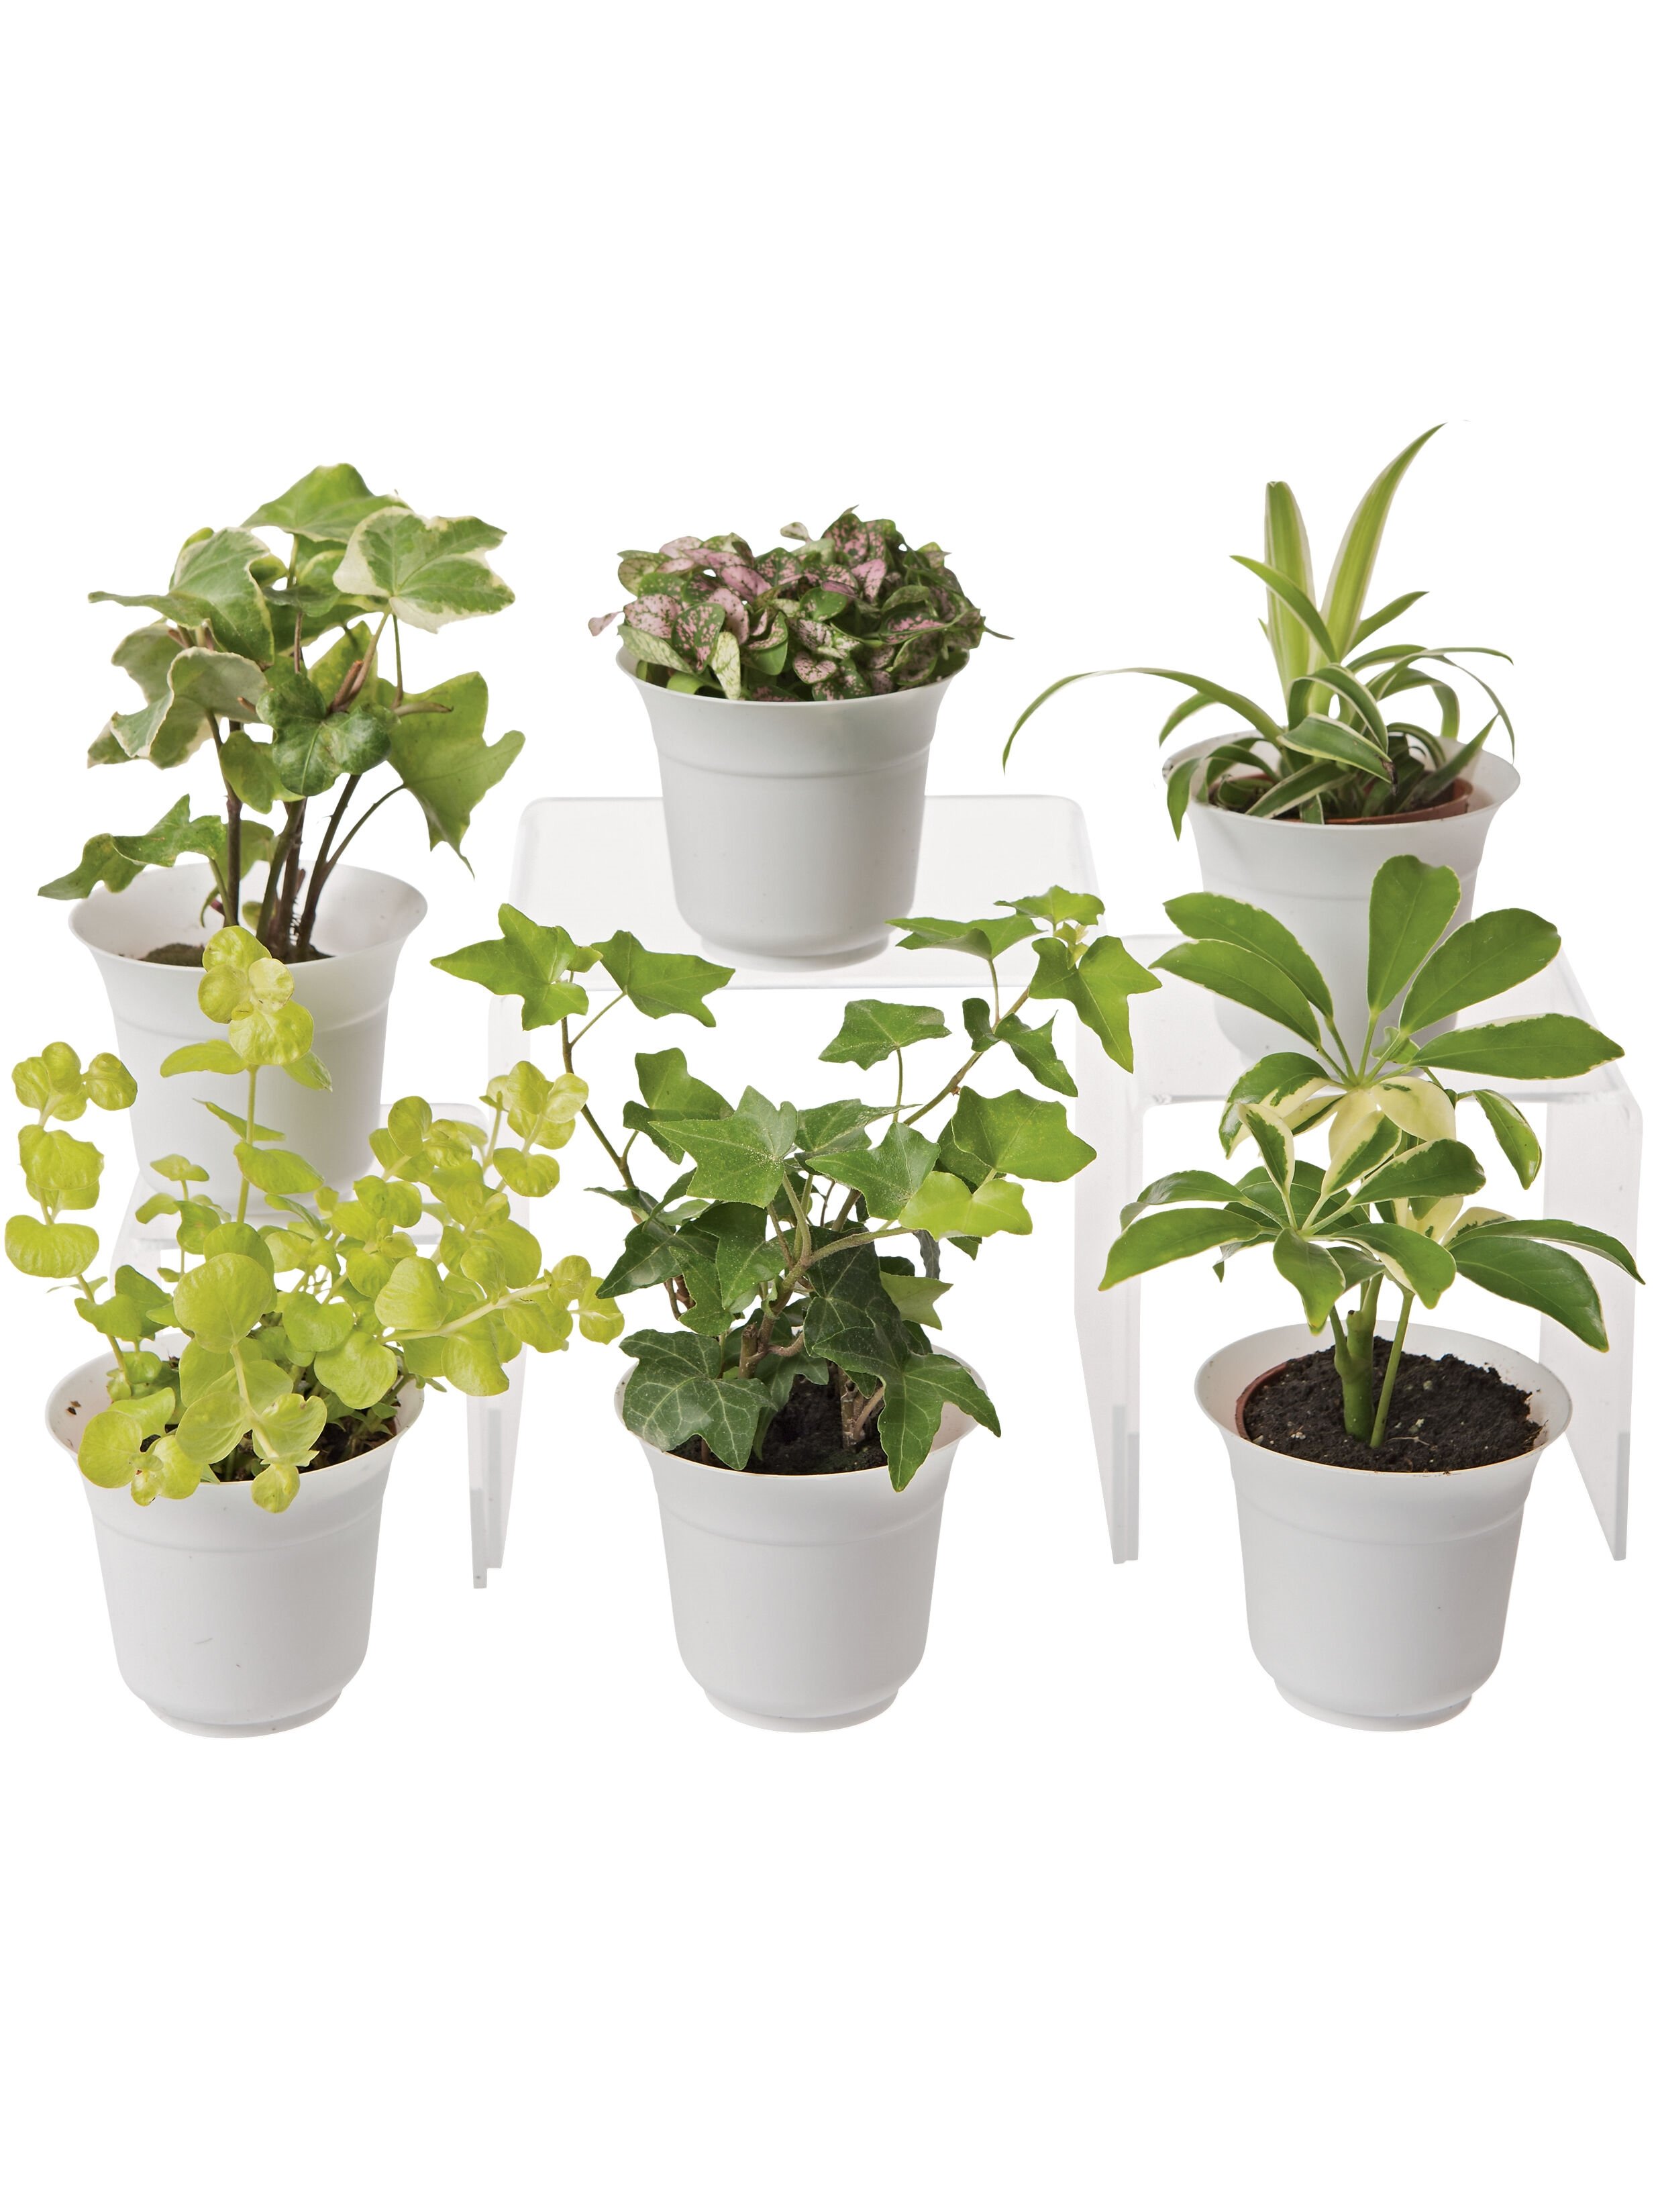 Low Light Terrarium Plant Collection - Small Terrarium Plants for Sale